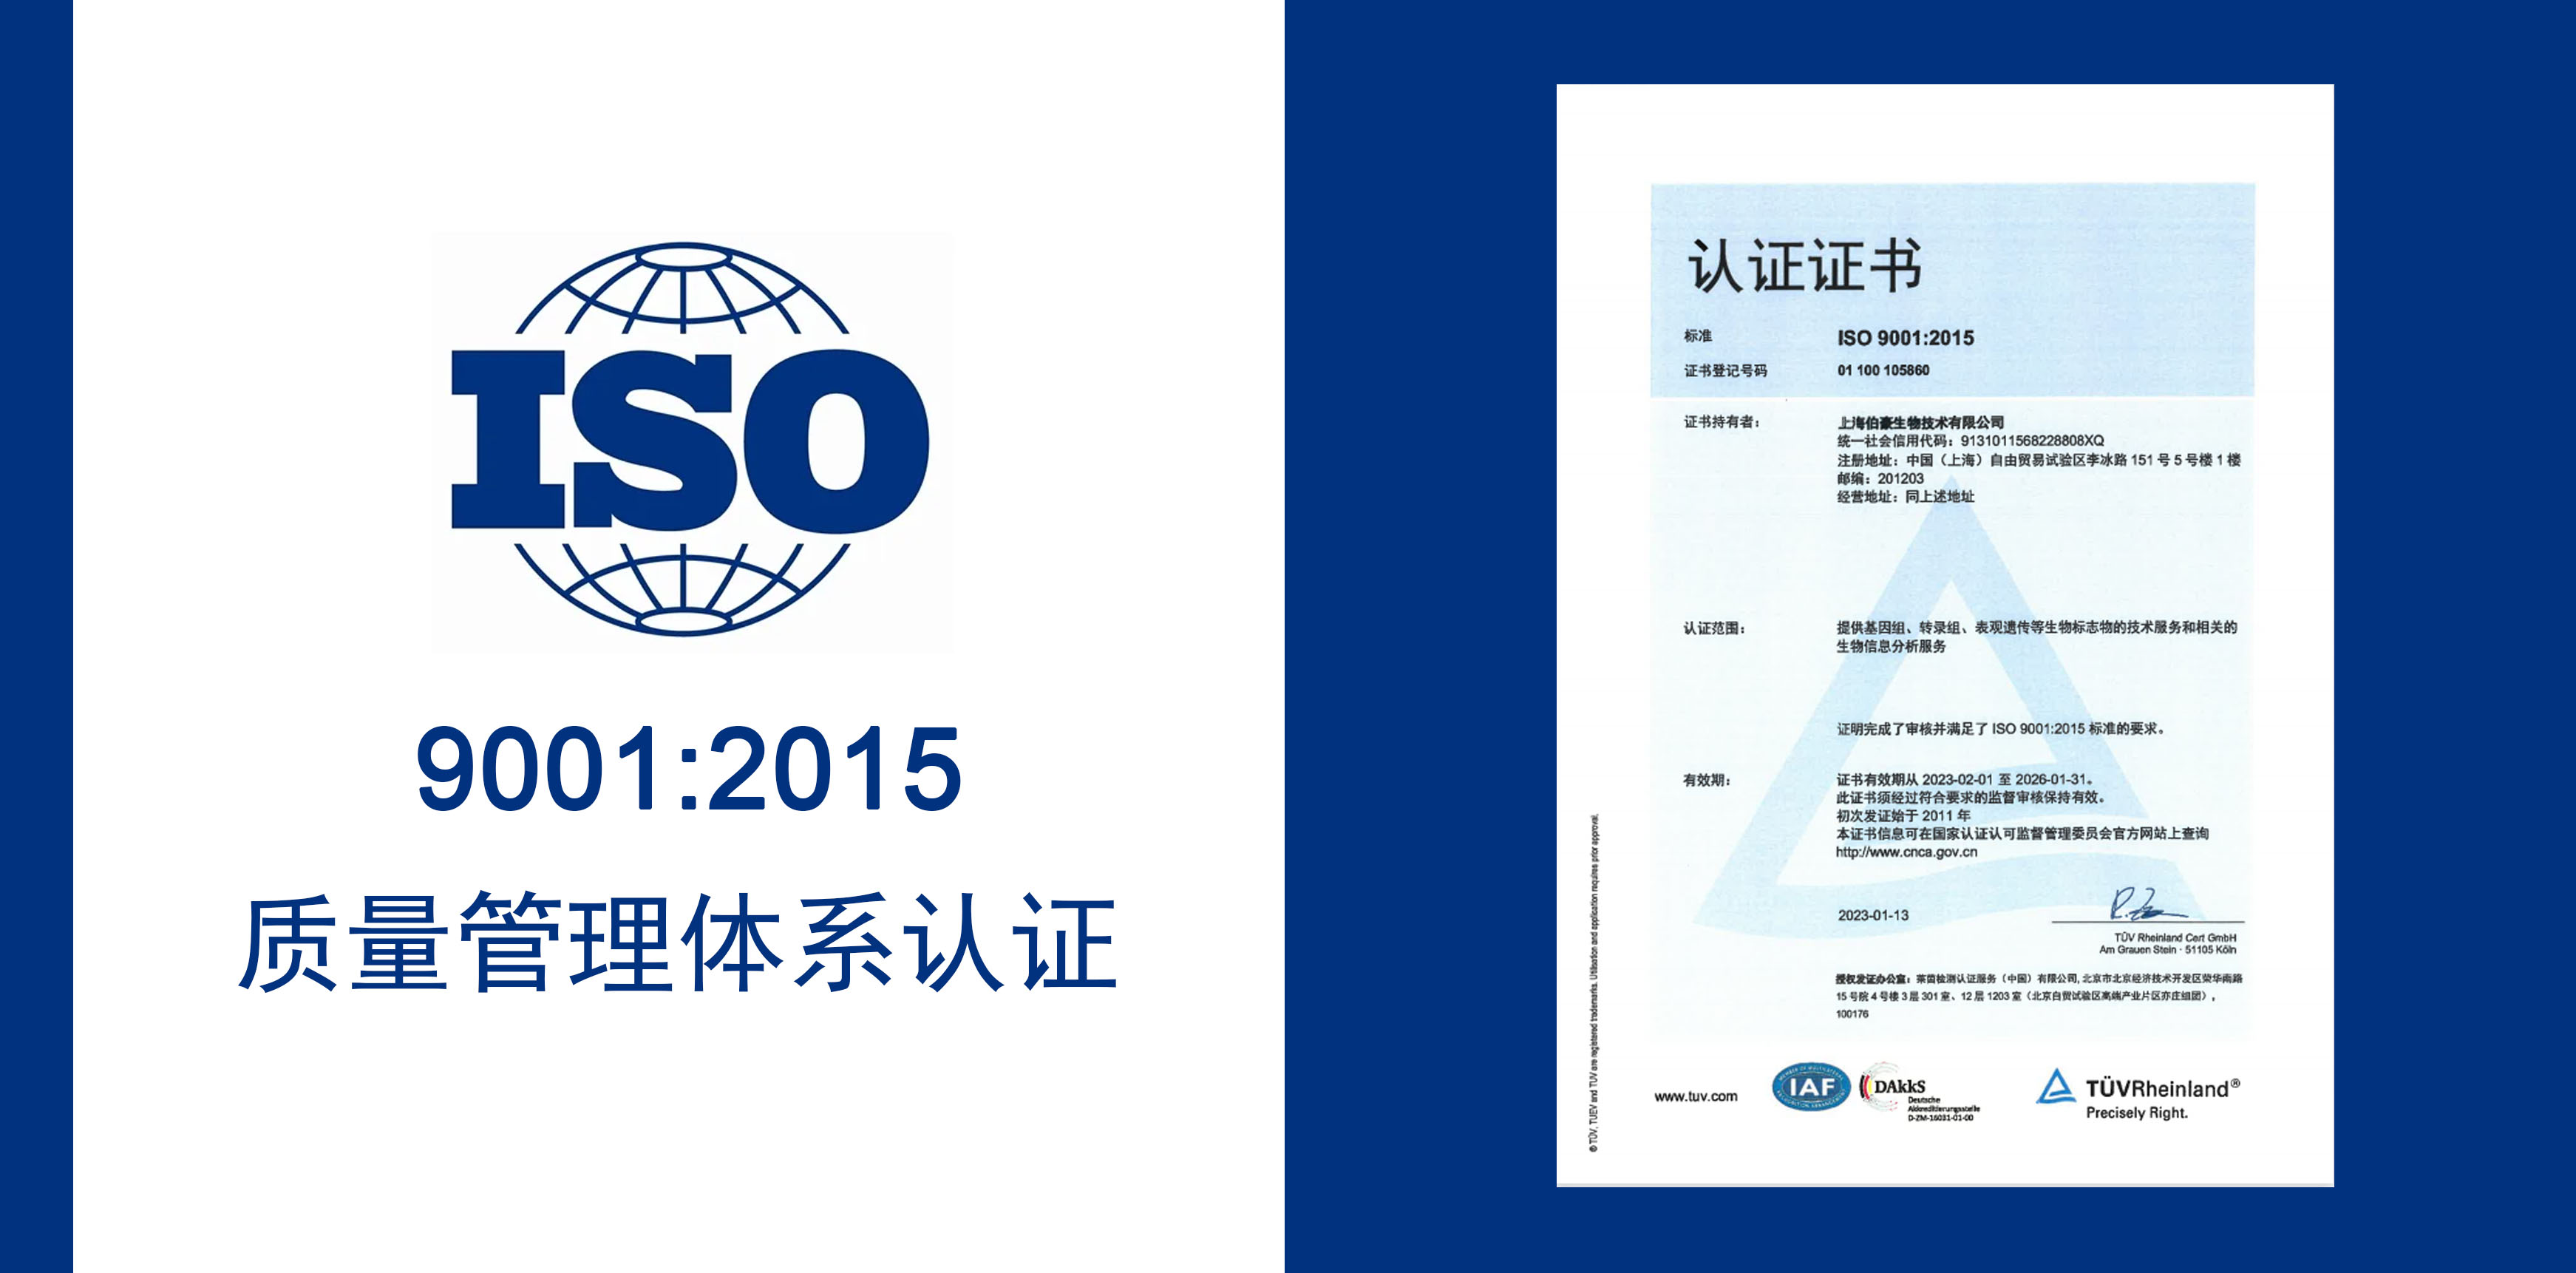 4008云顶集团生物获得 IOS9001 质量服务体系认证